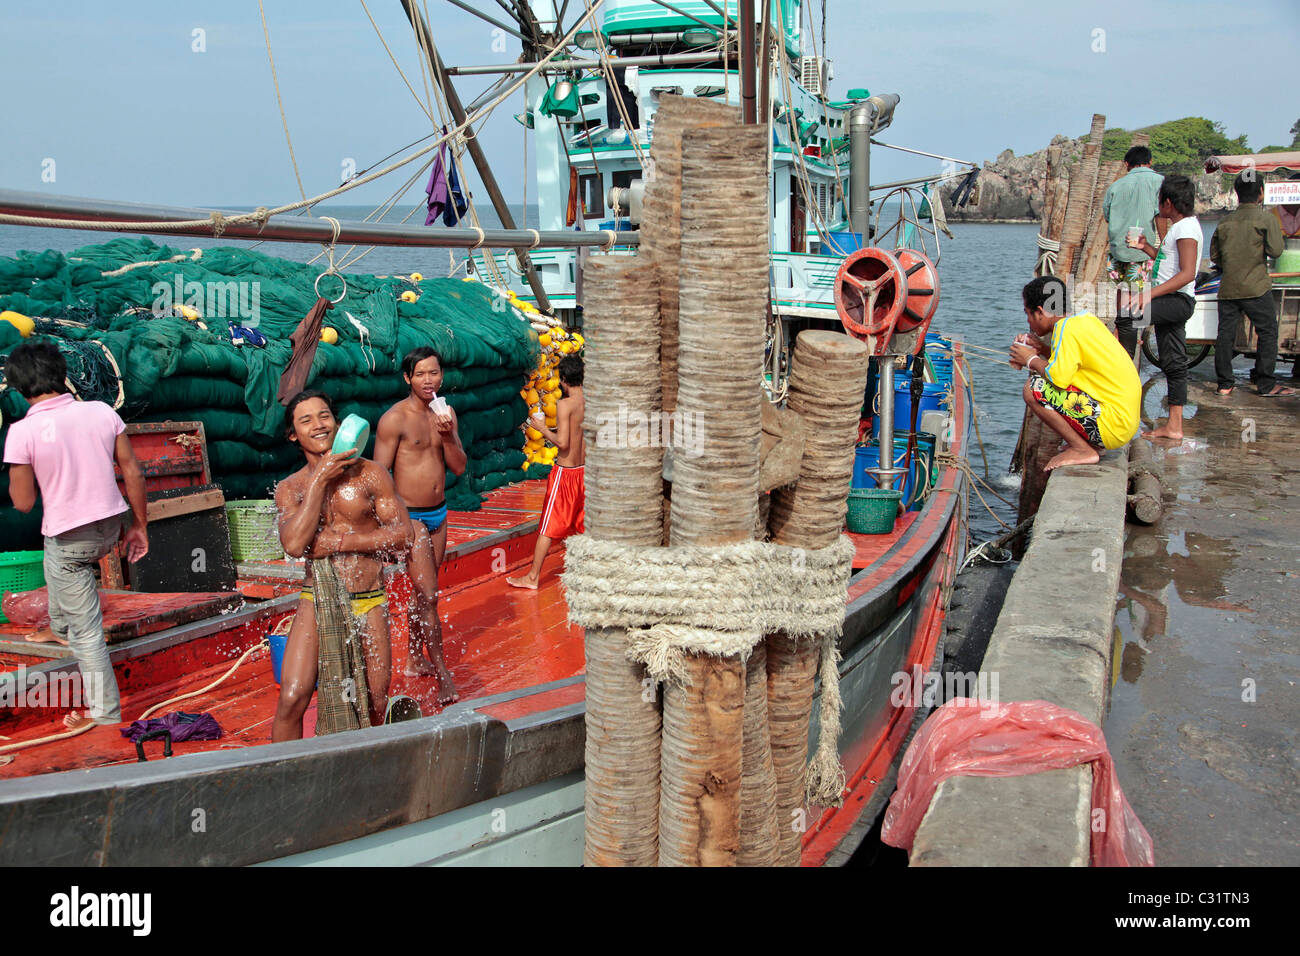 Pescatore birmano su una barca, birmano la manodopera è più conveniente, PORTO DI PESCA DI BANG SAPHAN, Thailandia, ASIA Foto Stock